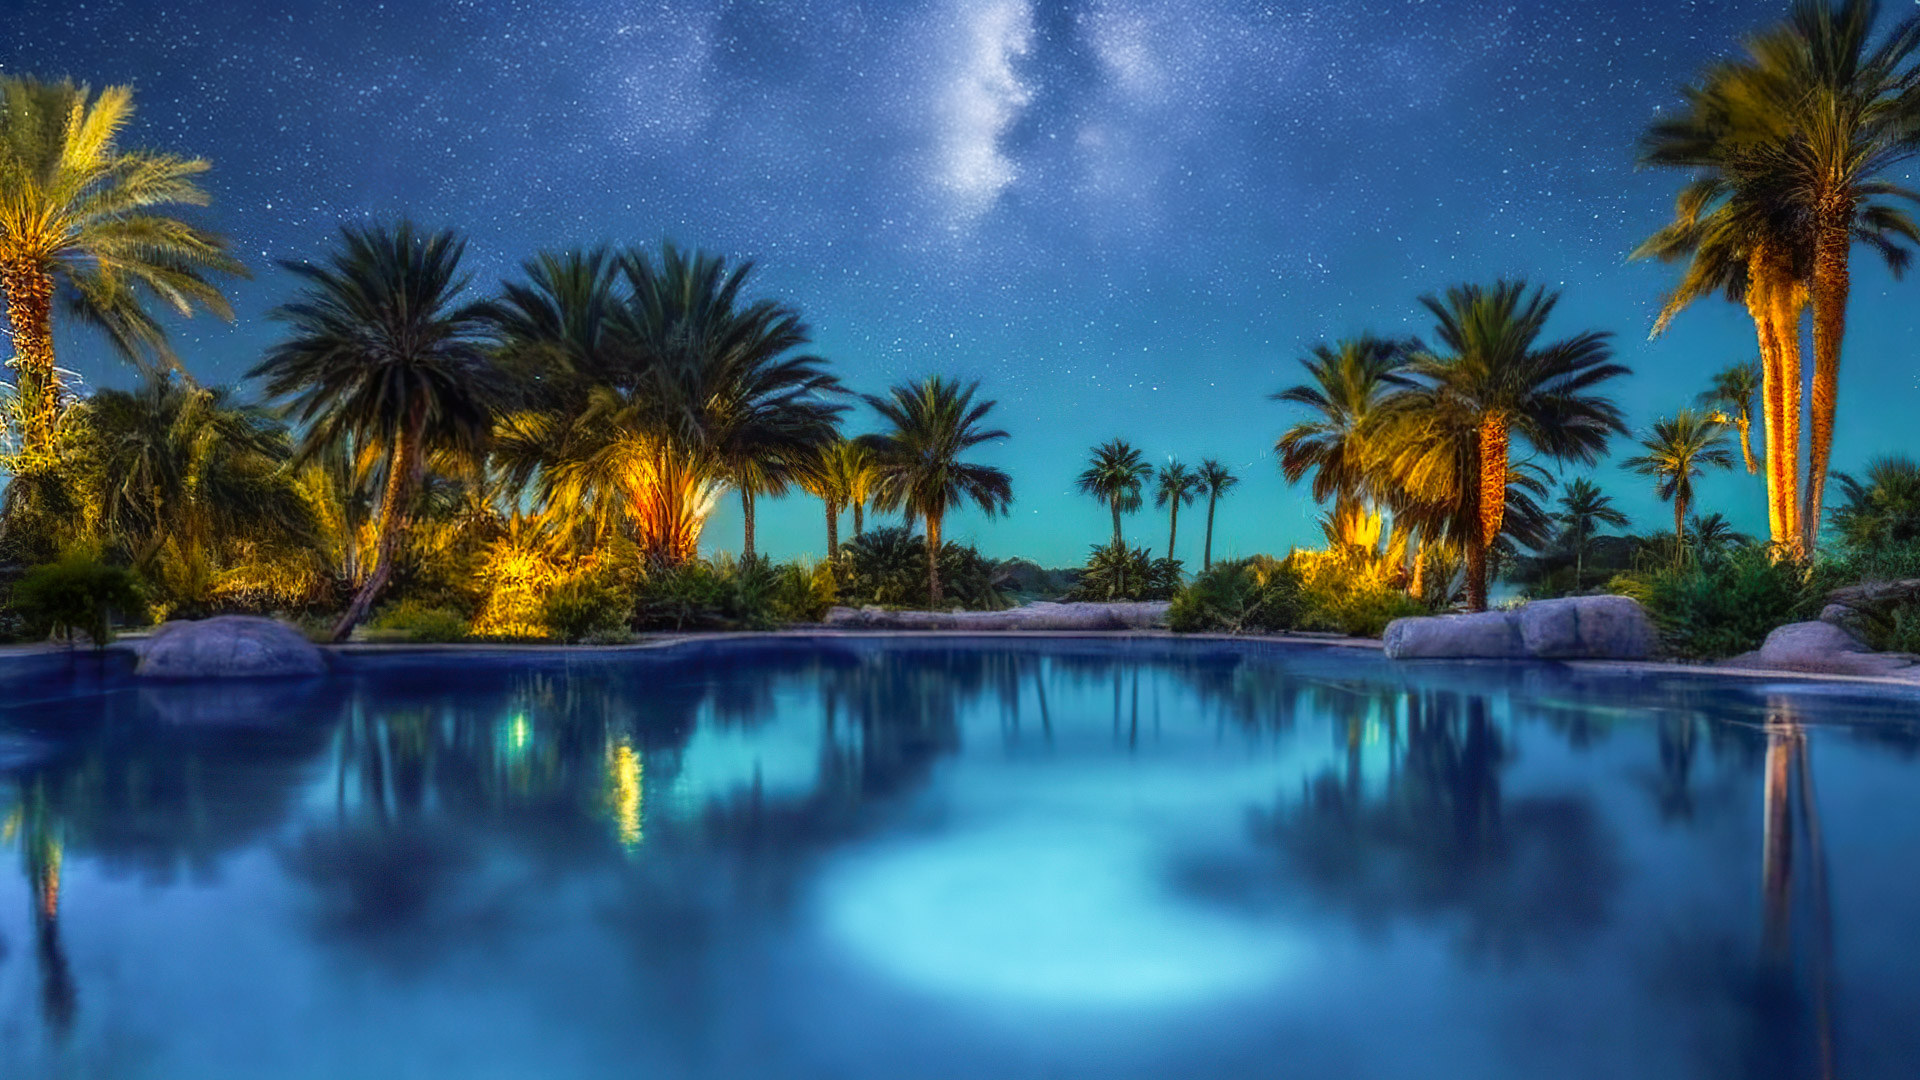 Perdez-vous dans la sérénité de notre fond d'écran de nature en haute résolution en HD 1080p, capturant une oasis désertique sous la Voie lactée, où des palmiers entourent une piscine sereine et étoilée.